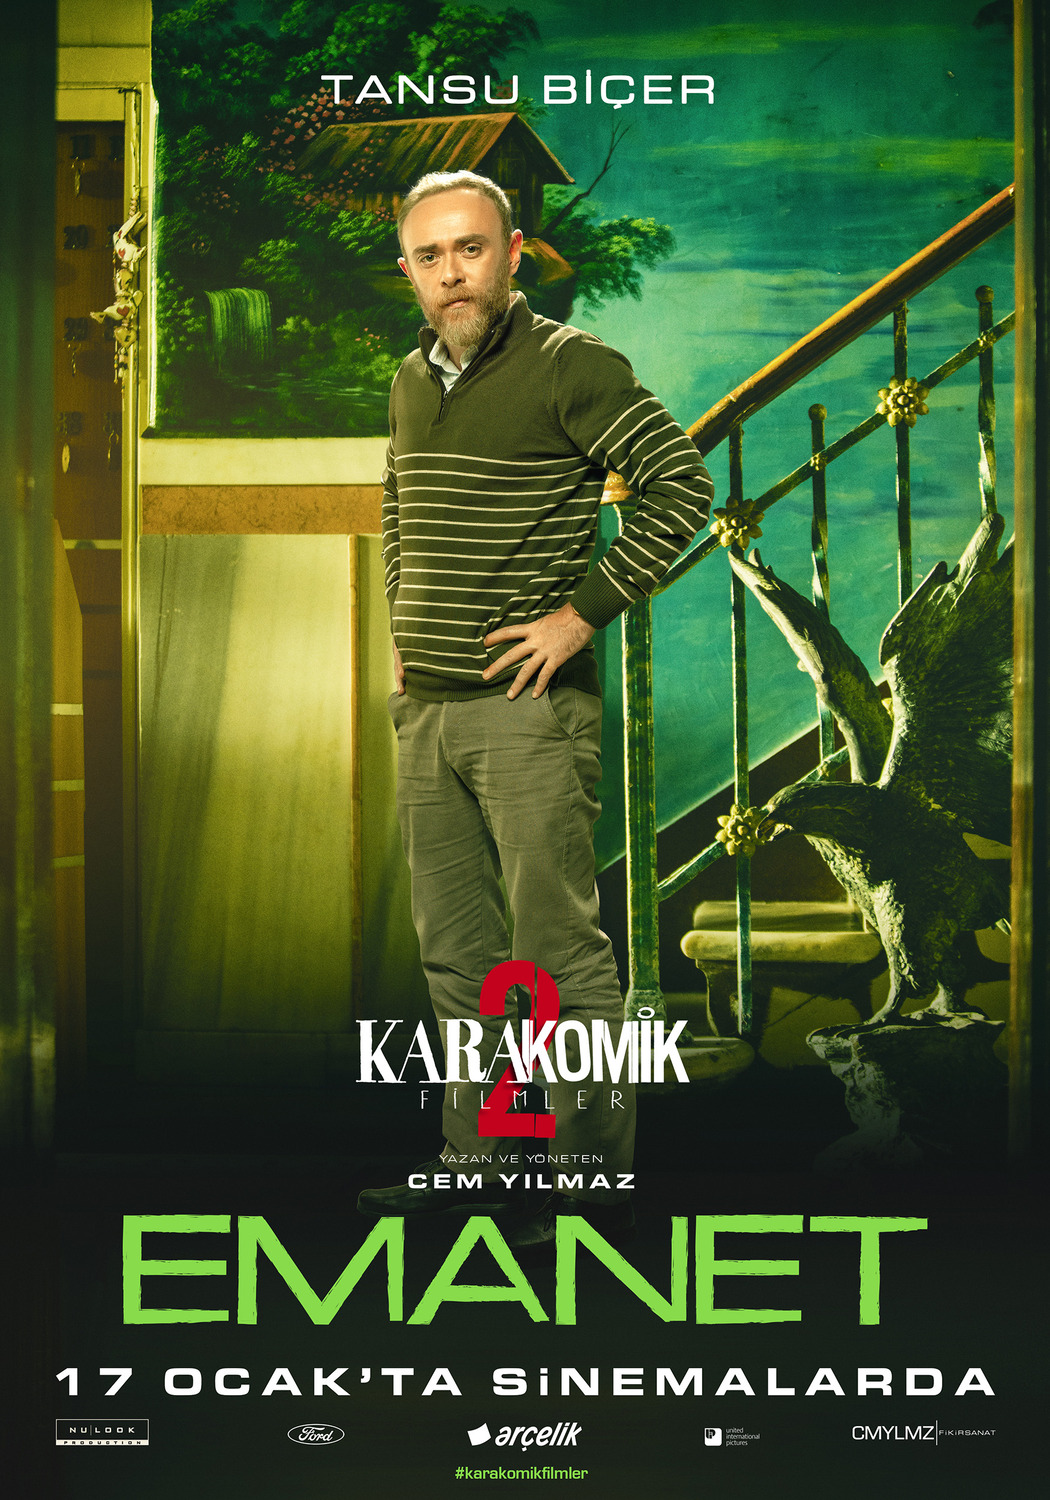 Extra Large Movie Poster Image for Karakomik Filmler: Emanet (#5 of 5)